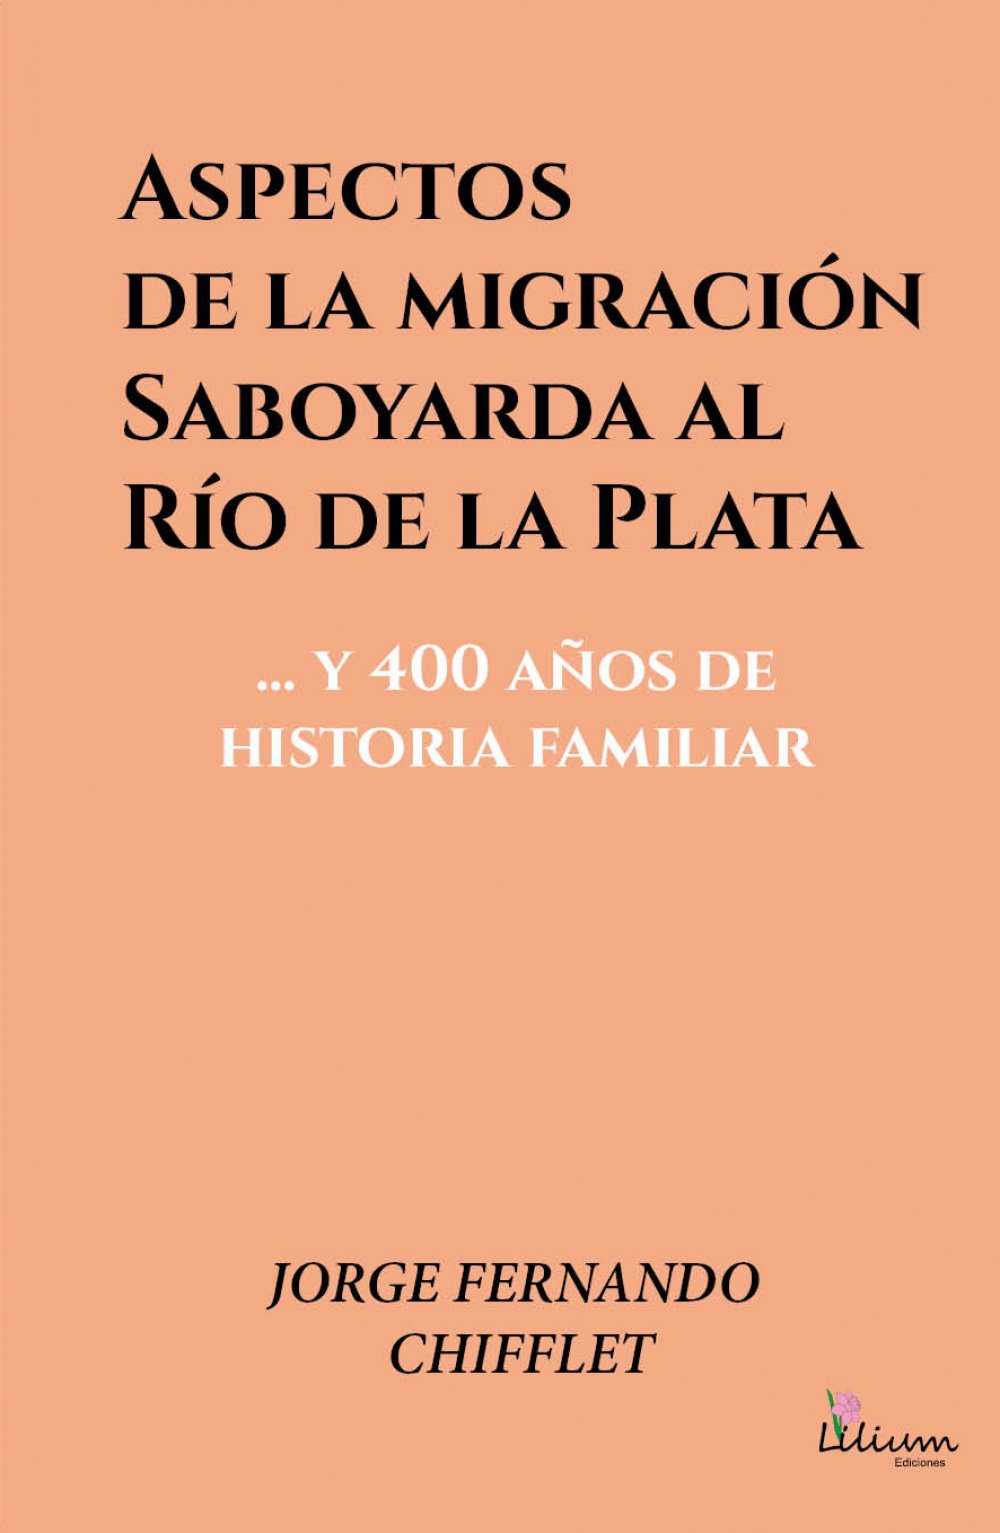 Aspectos de la migración saboyarda al Río de la Plata y 400 años de historia familiar